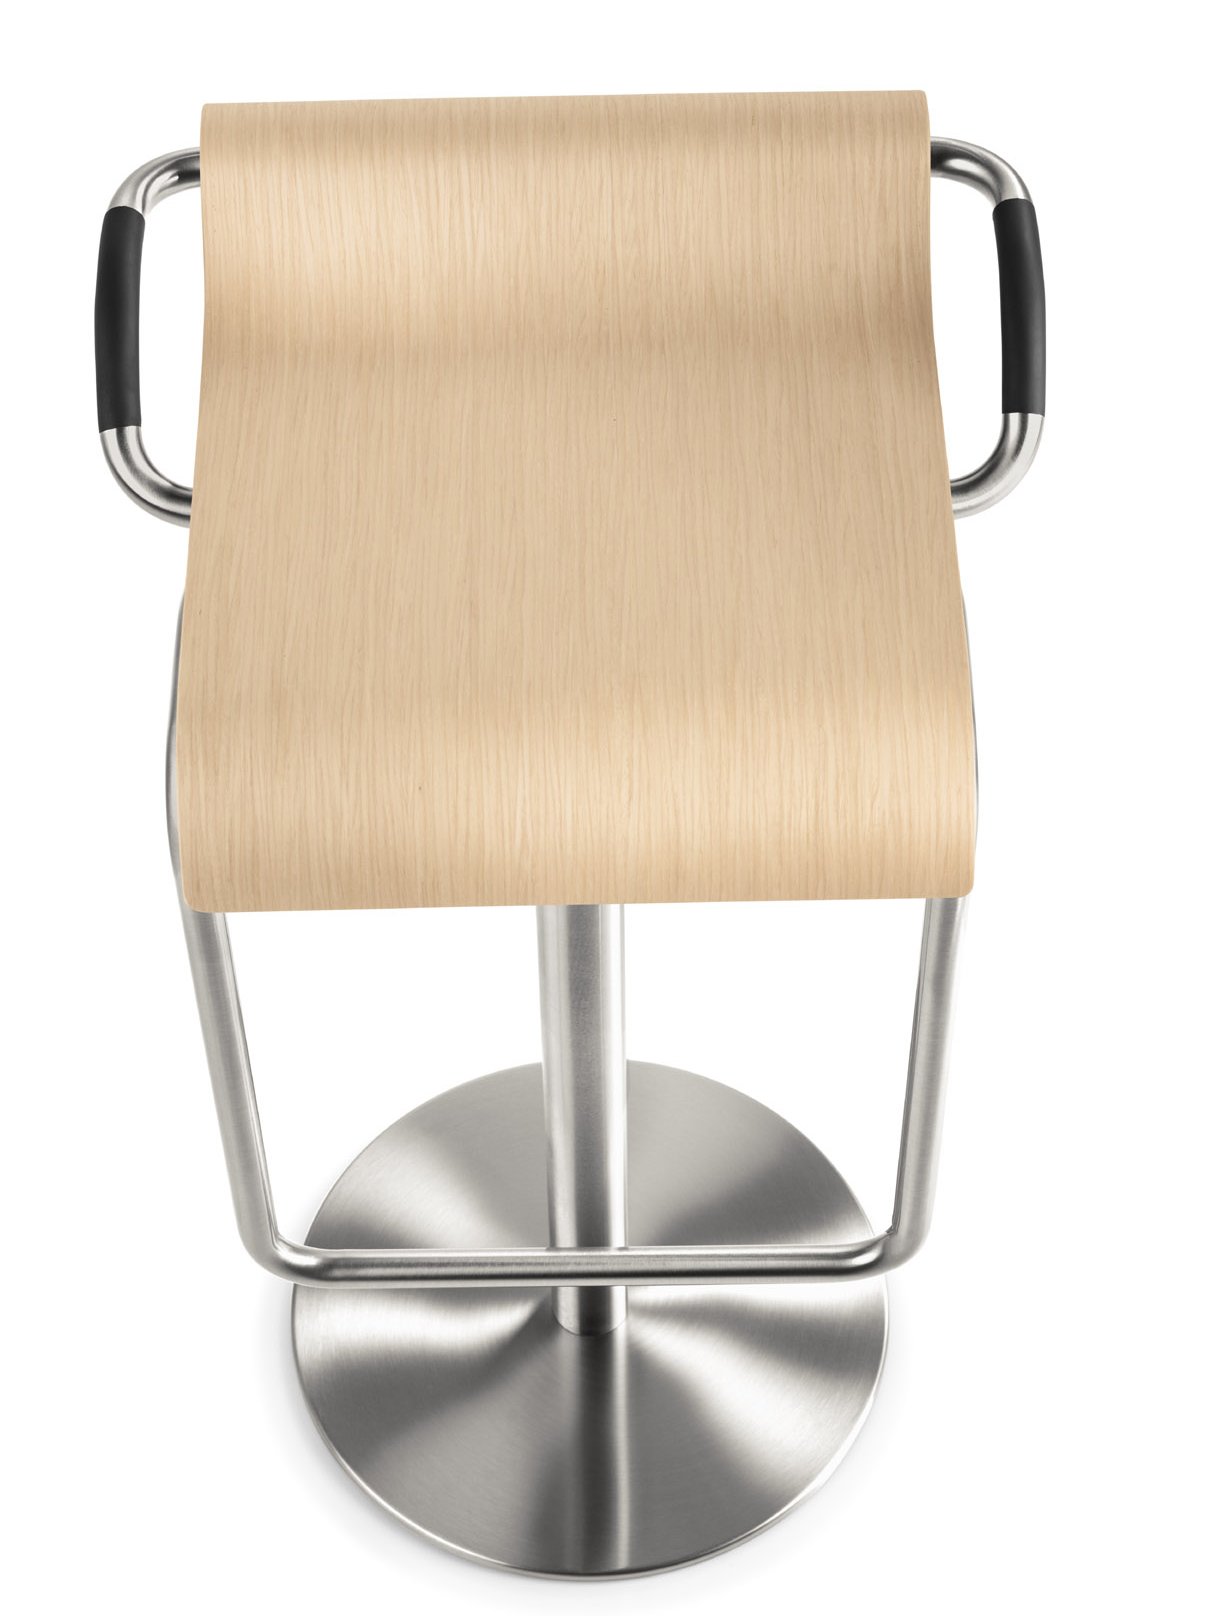 Eiche-Holzsitz-Barhocker ohne Rückenlehne